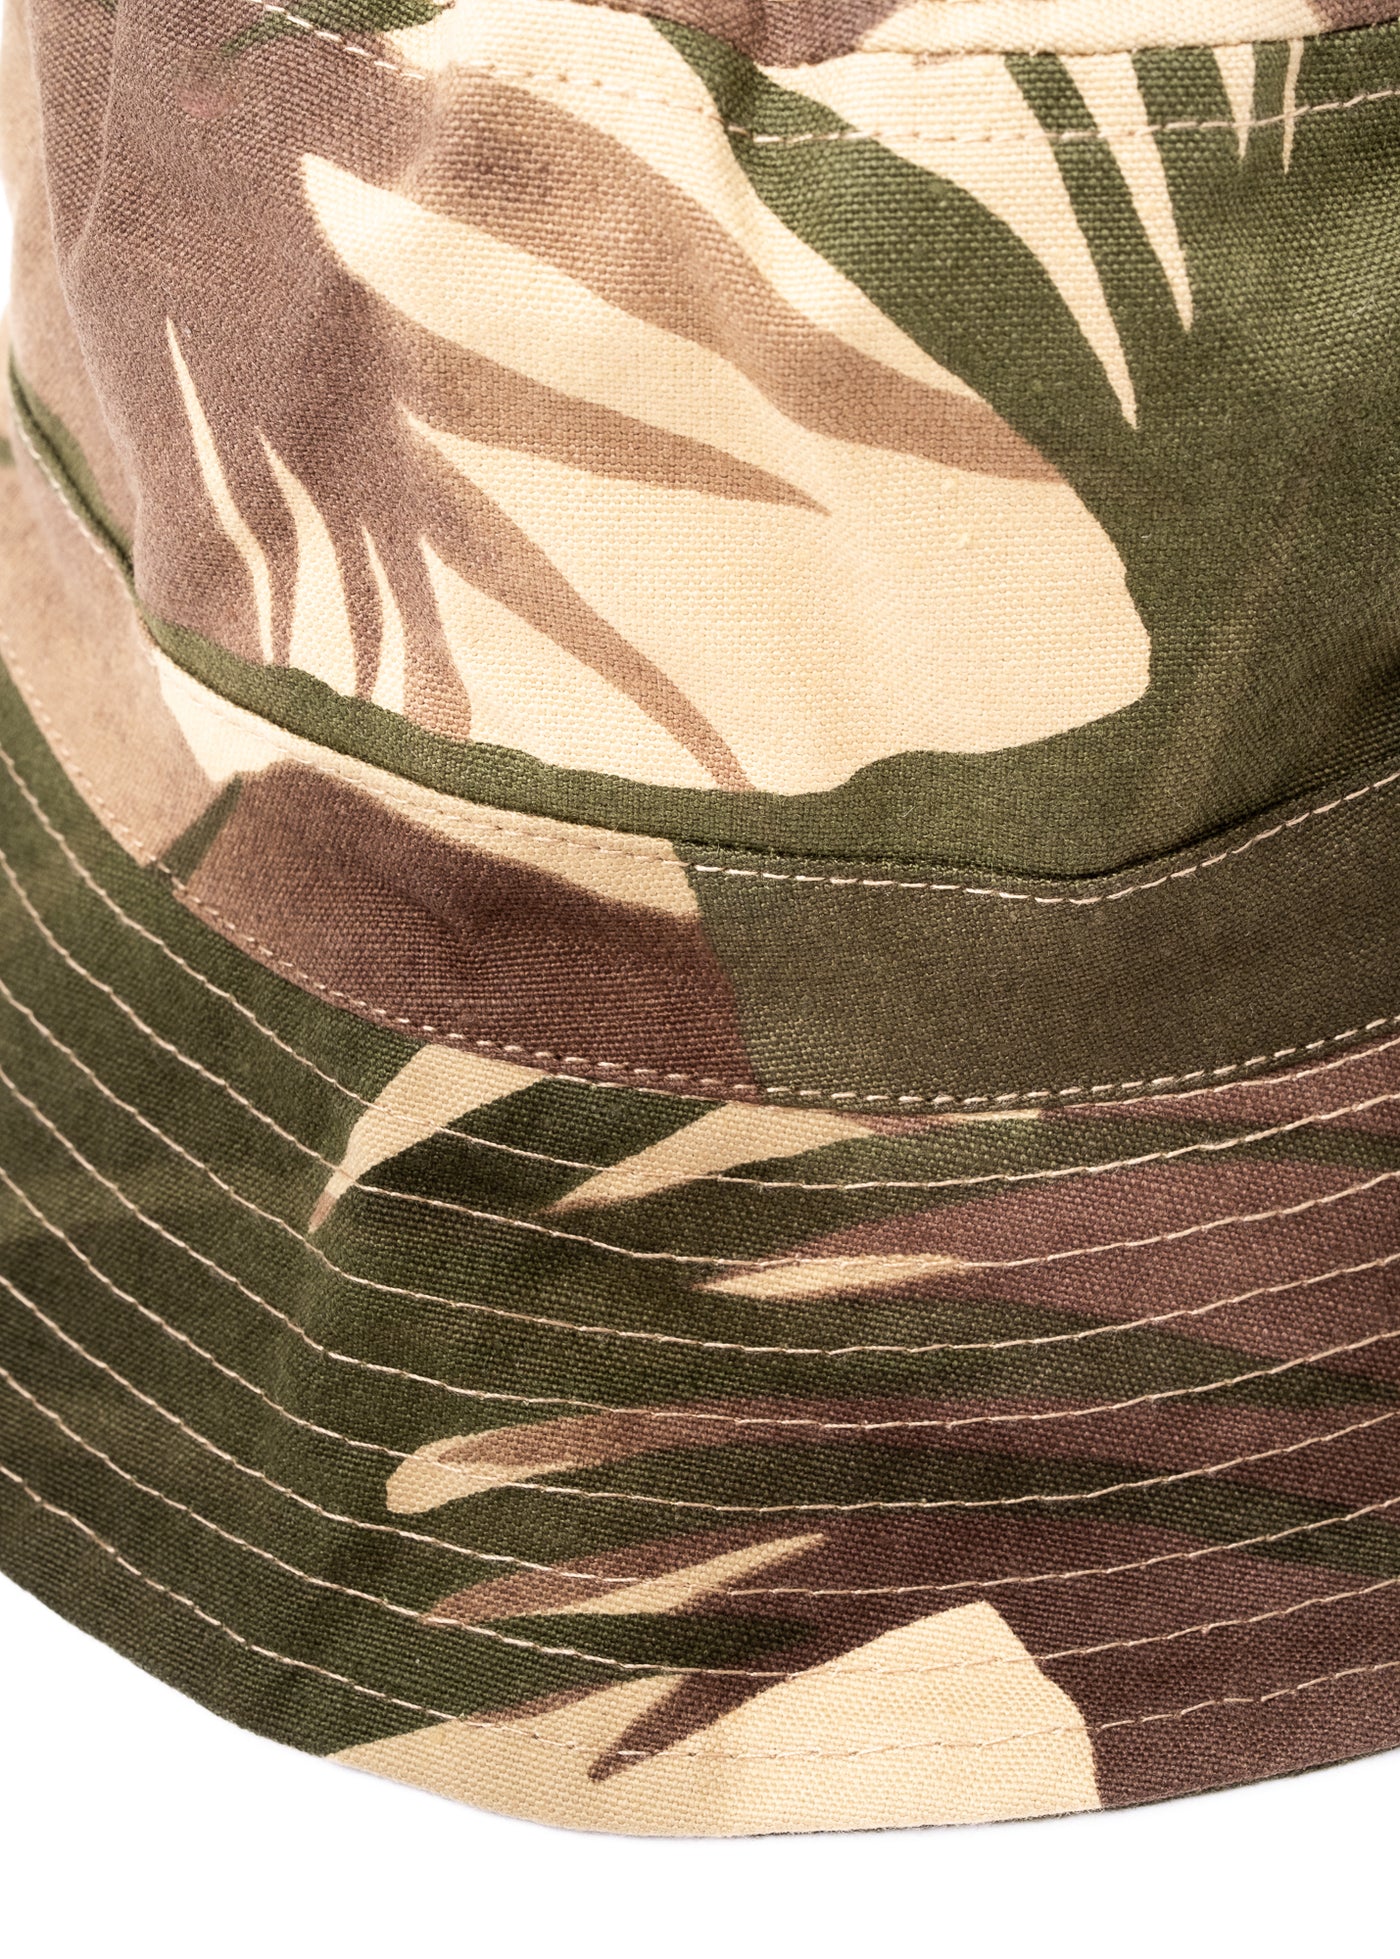 Bucket Hat Tropical Cotton Dune